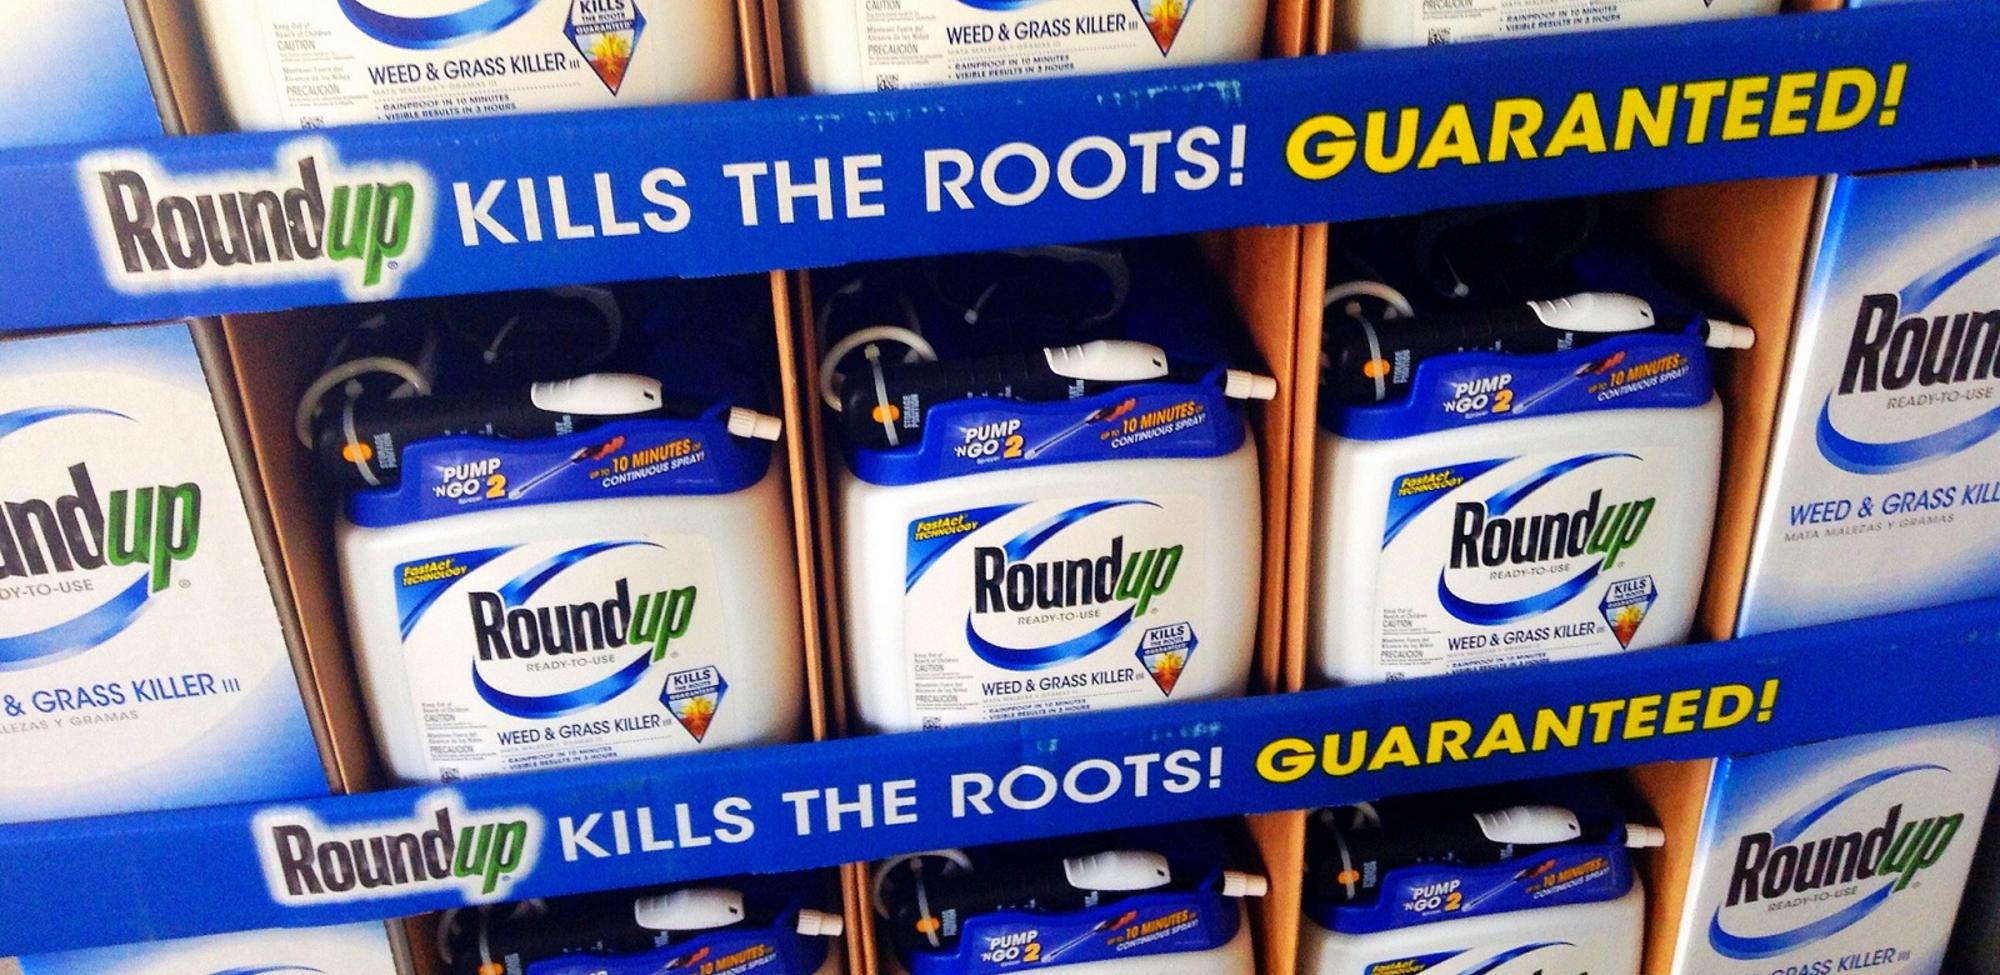 RoundUp de Monsanto glifosato